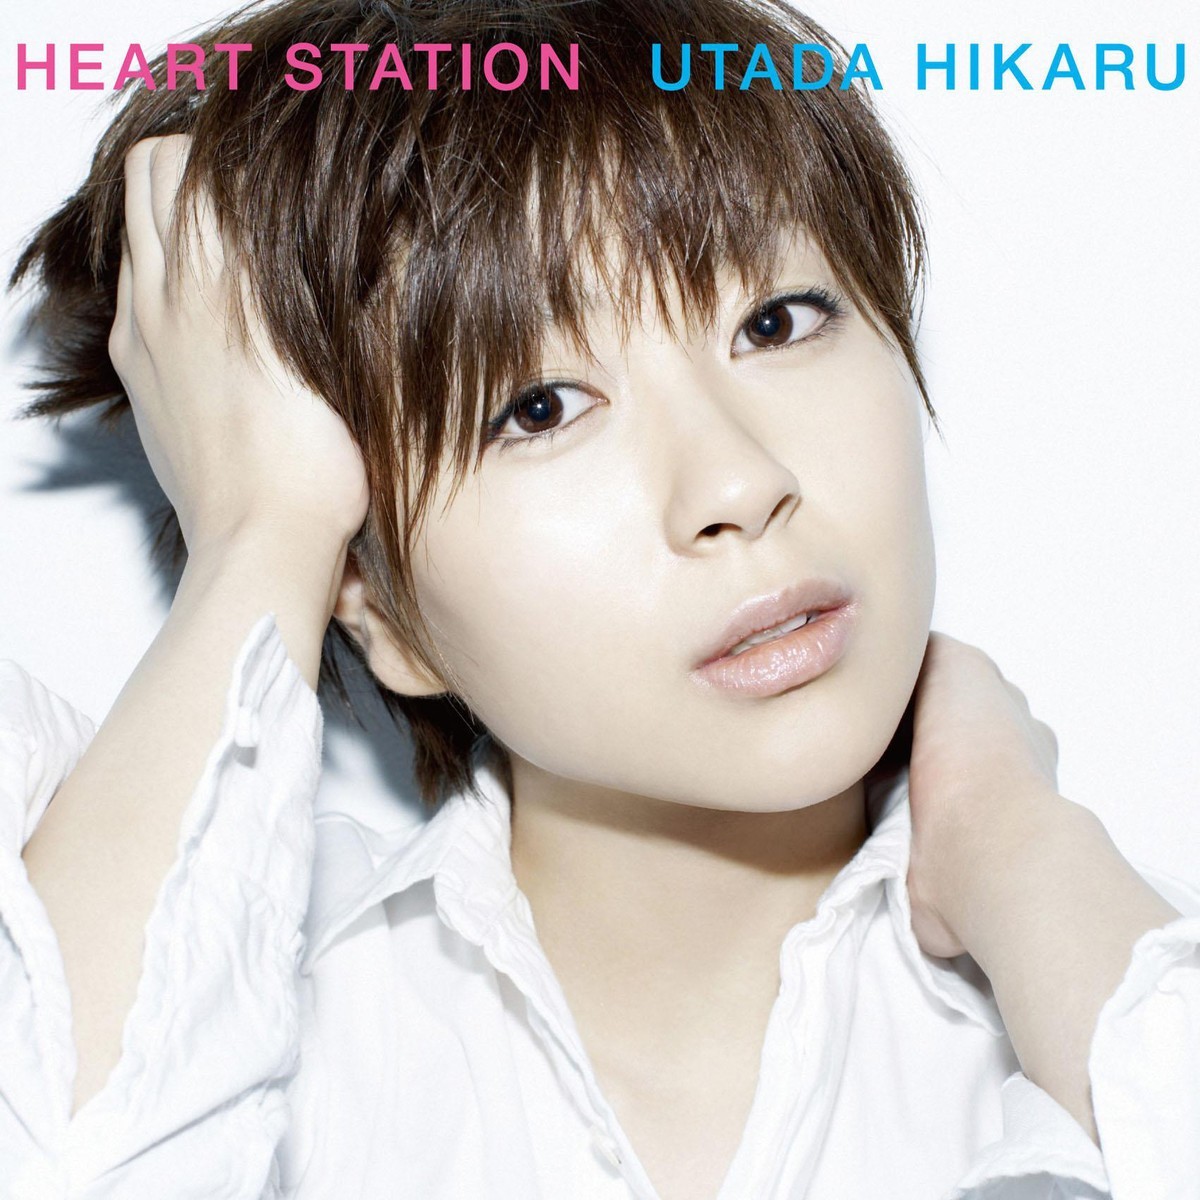 宇多田ヒカル (Utada Hikaru) - HEART STATION (2018 Remastered Album) [Mora FLAC 24bit/96kHz]